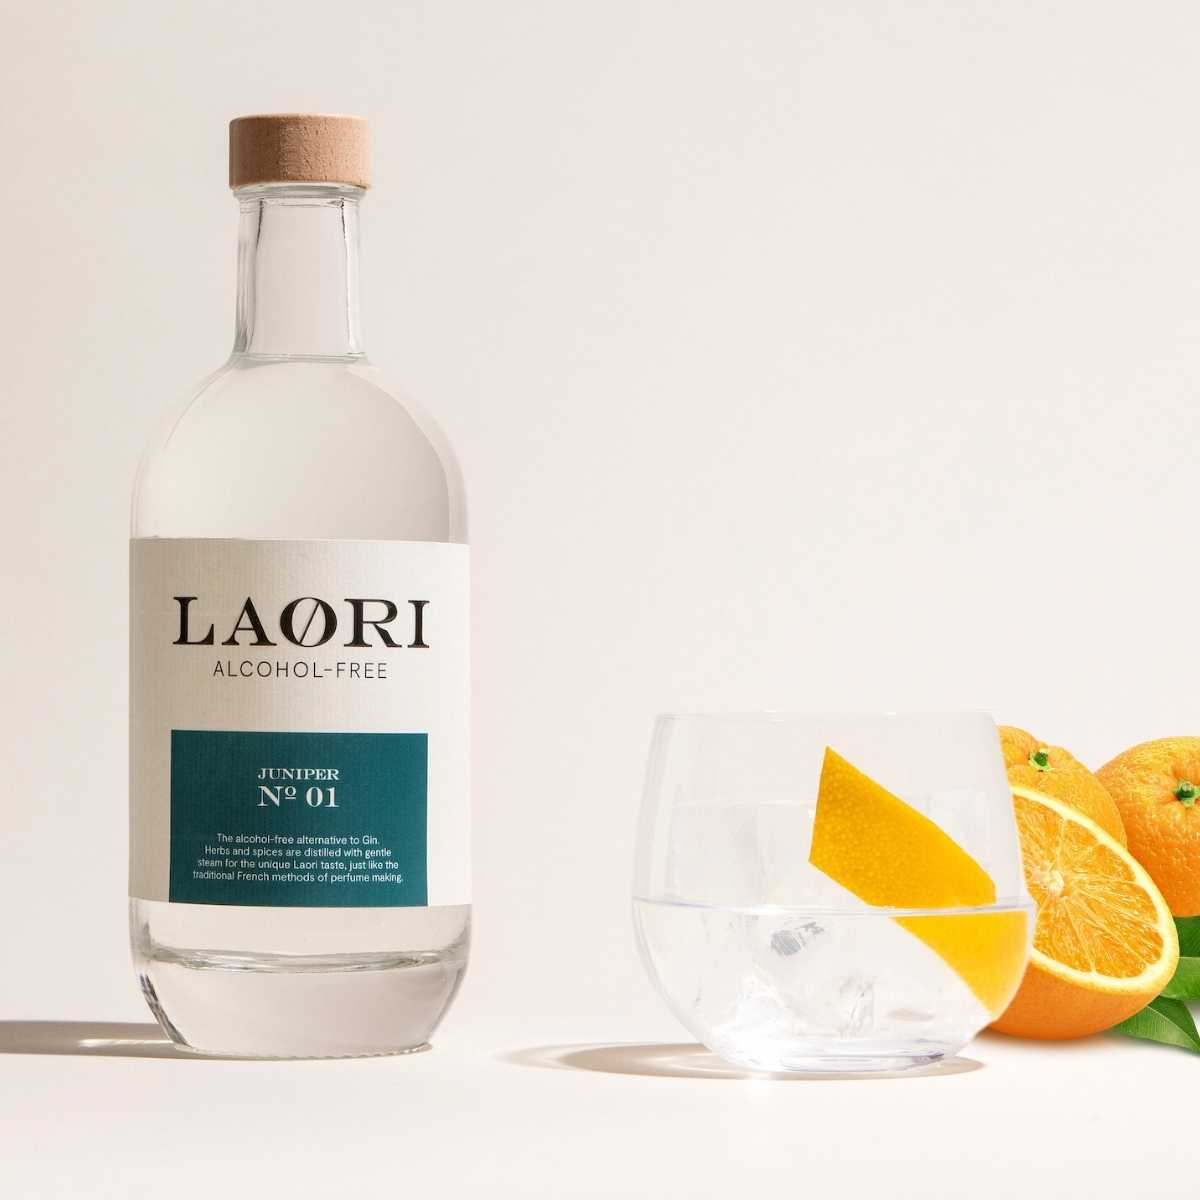 Mini tasting set: Laori Juniper Mini (0.05l) + free tonic water